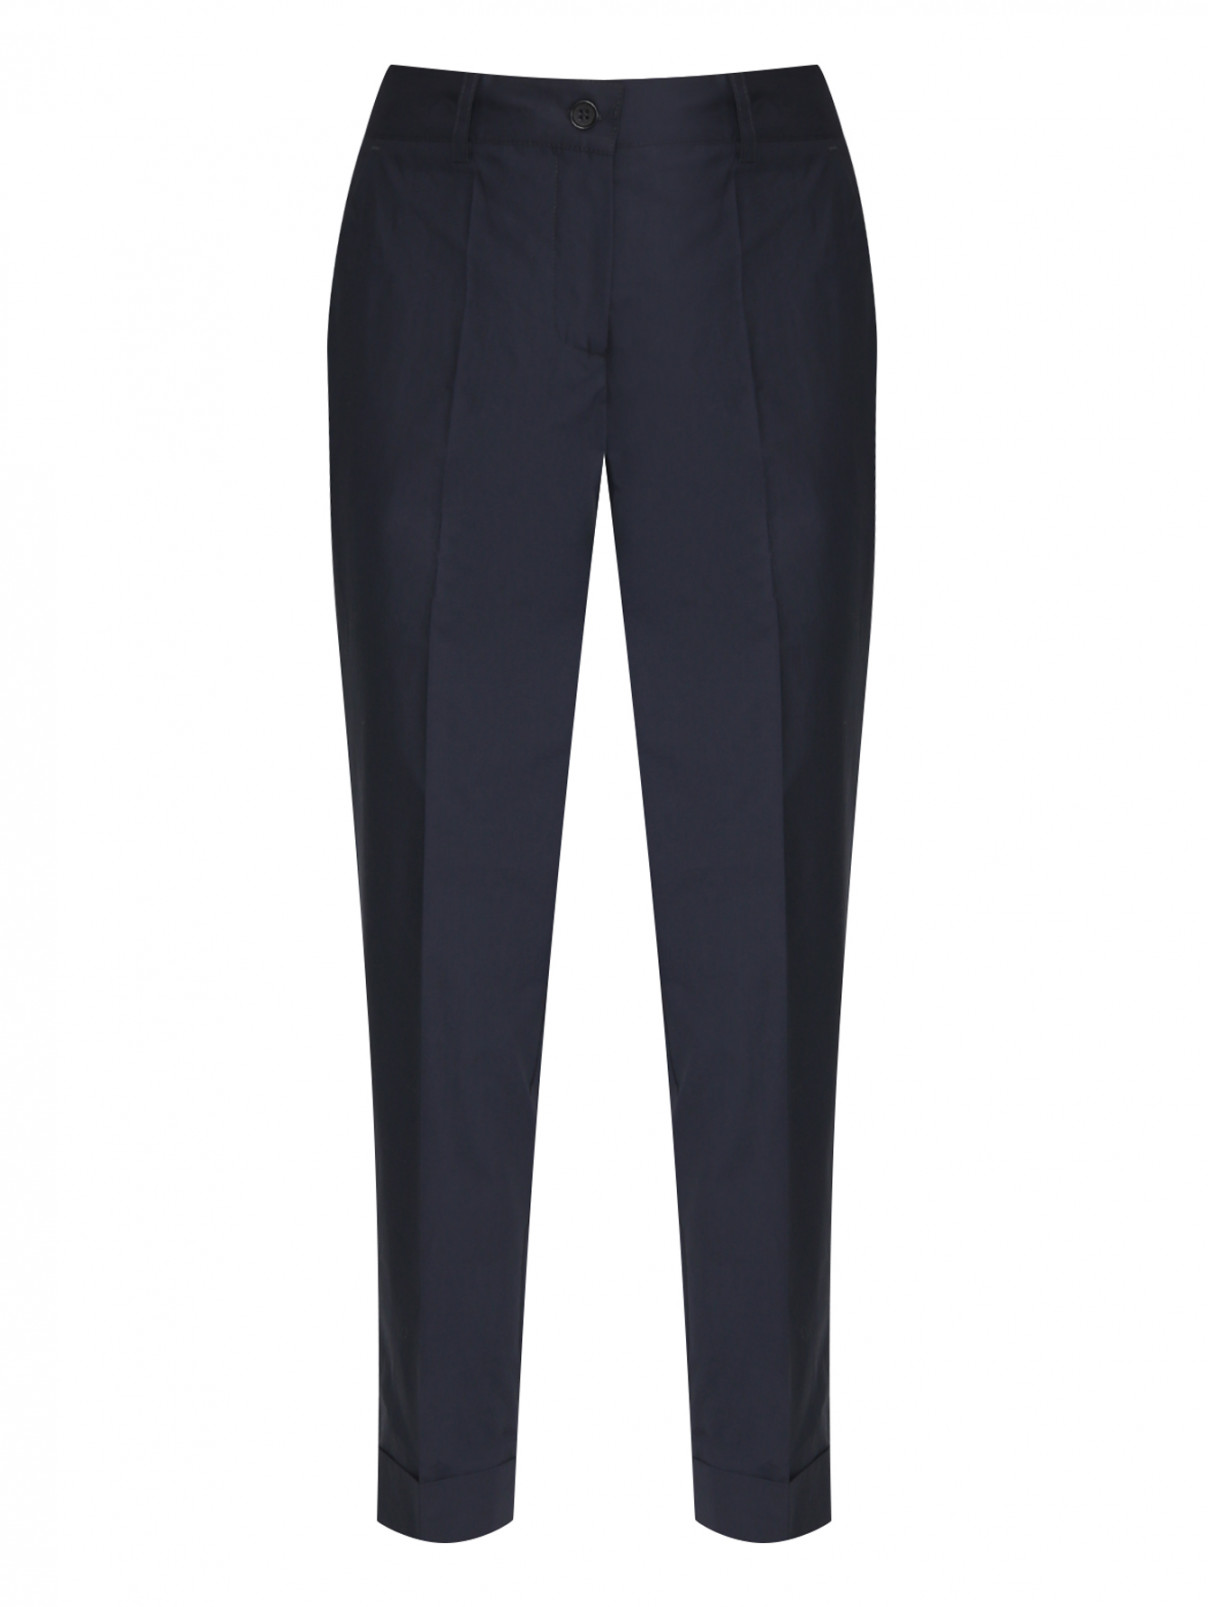 Однотонные брюки из хлопка P.A.R.O.S.H.  –  Общий вид  – Цвет:  Синий